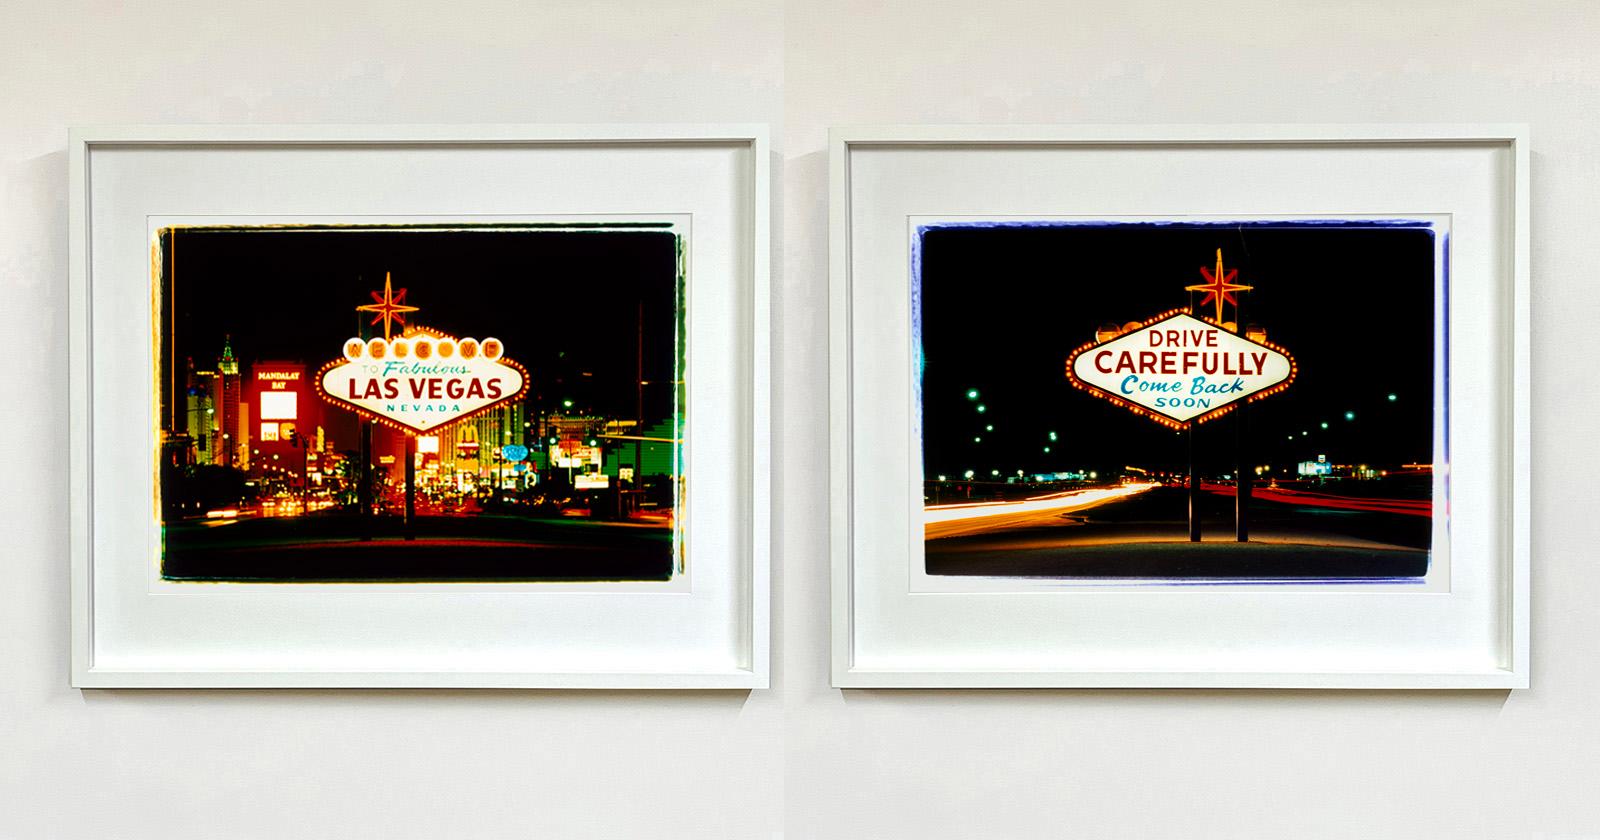 Ankunft und Abreise in Las Vegas, zwei gerahmte Fotos mit amerikanischen Schildern.
Dieses Kunstwerk aus der Serie 